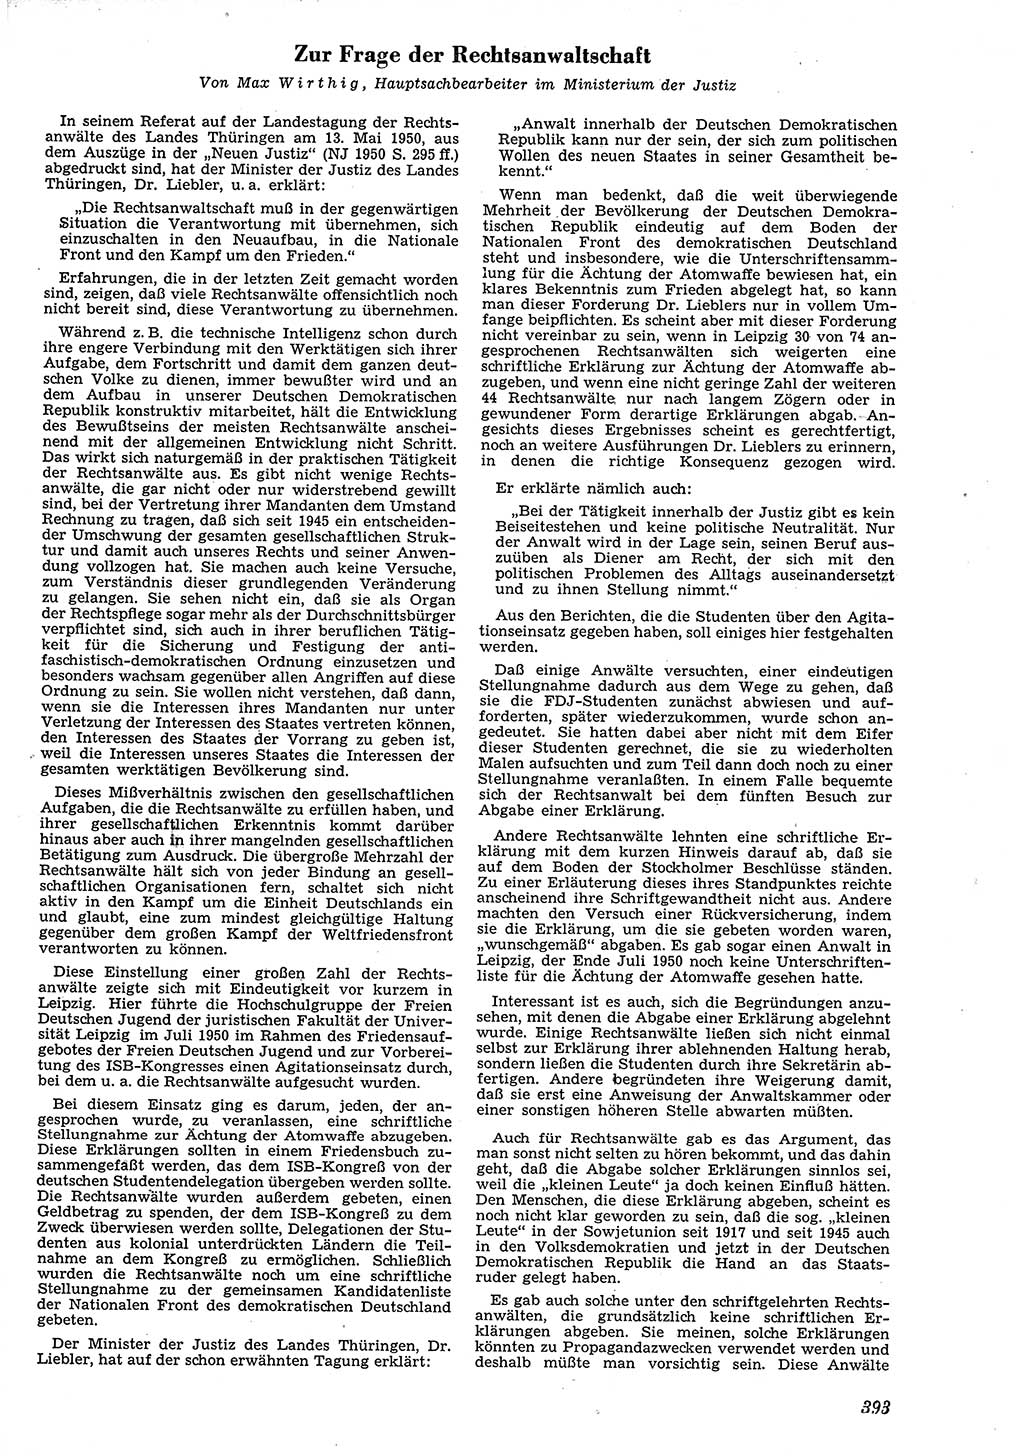 Neue Justiz (NJ), Zeitschrift für Recht und Rechtswissenschaft [Deutsche Demokratische Republik (DDR)], 4. Jahrgang 1950, Seite 393 (NJ DDR 1950, S. 393)